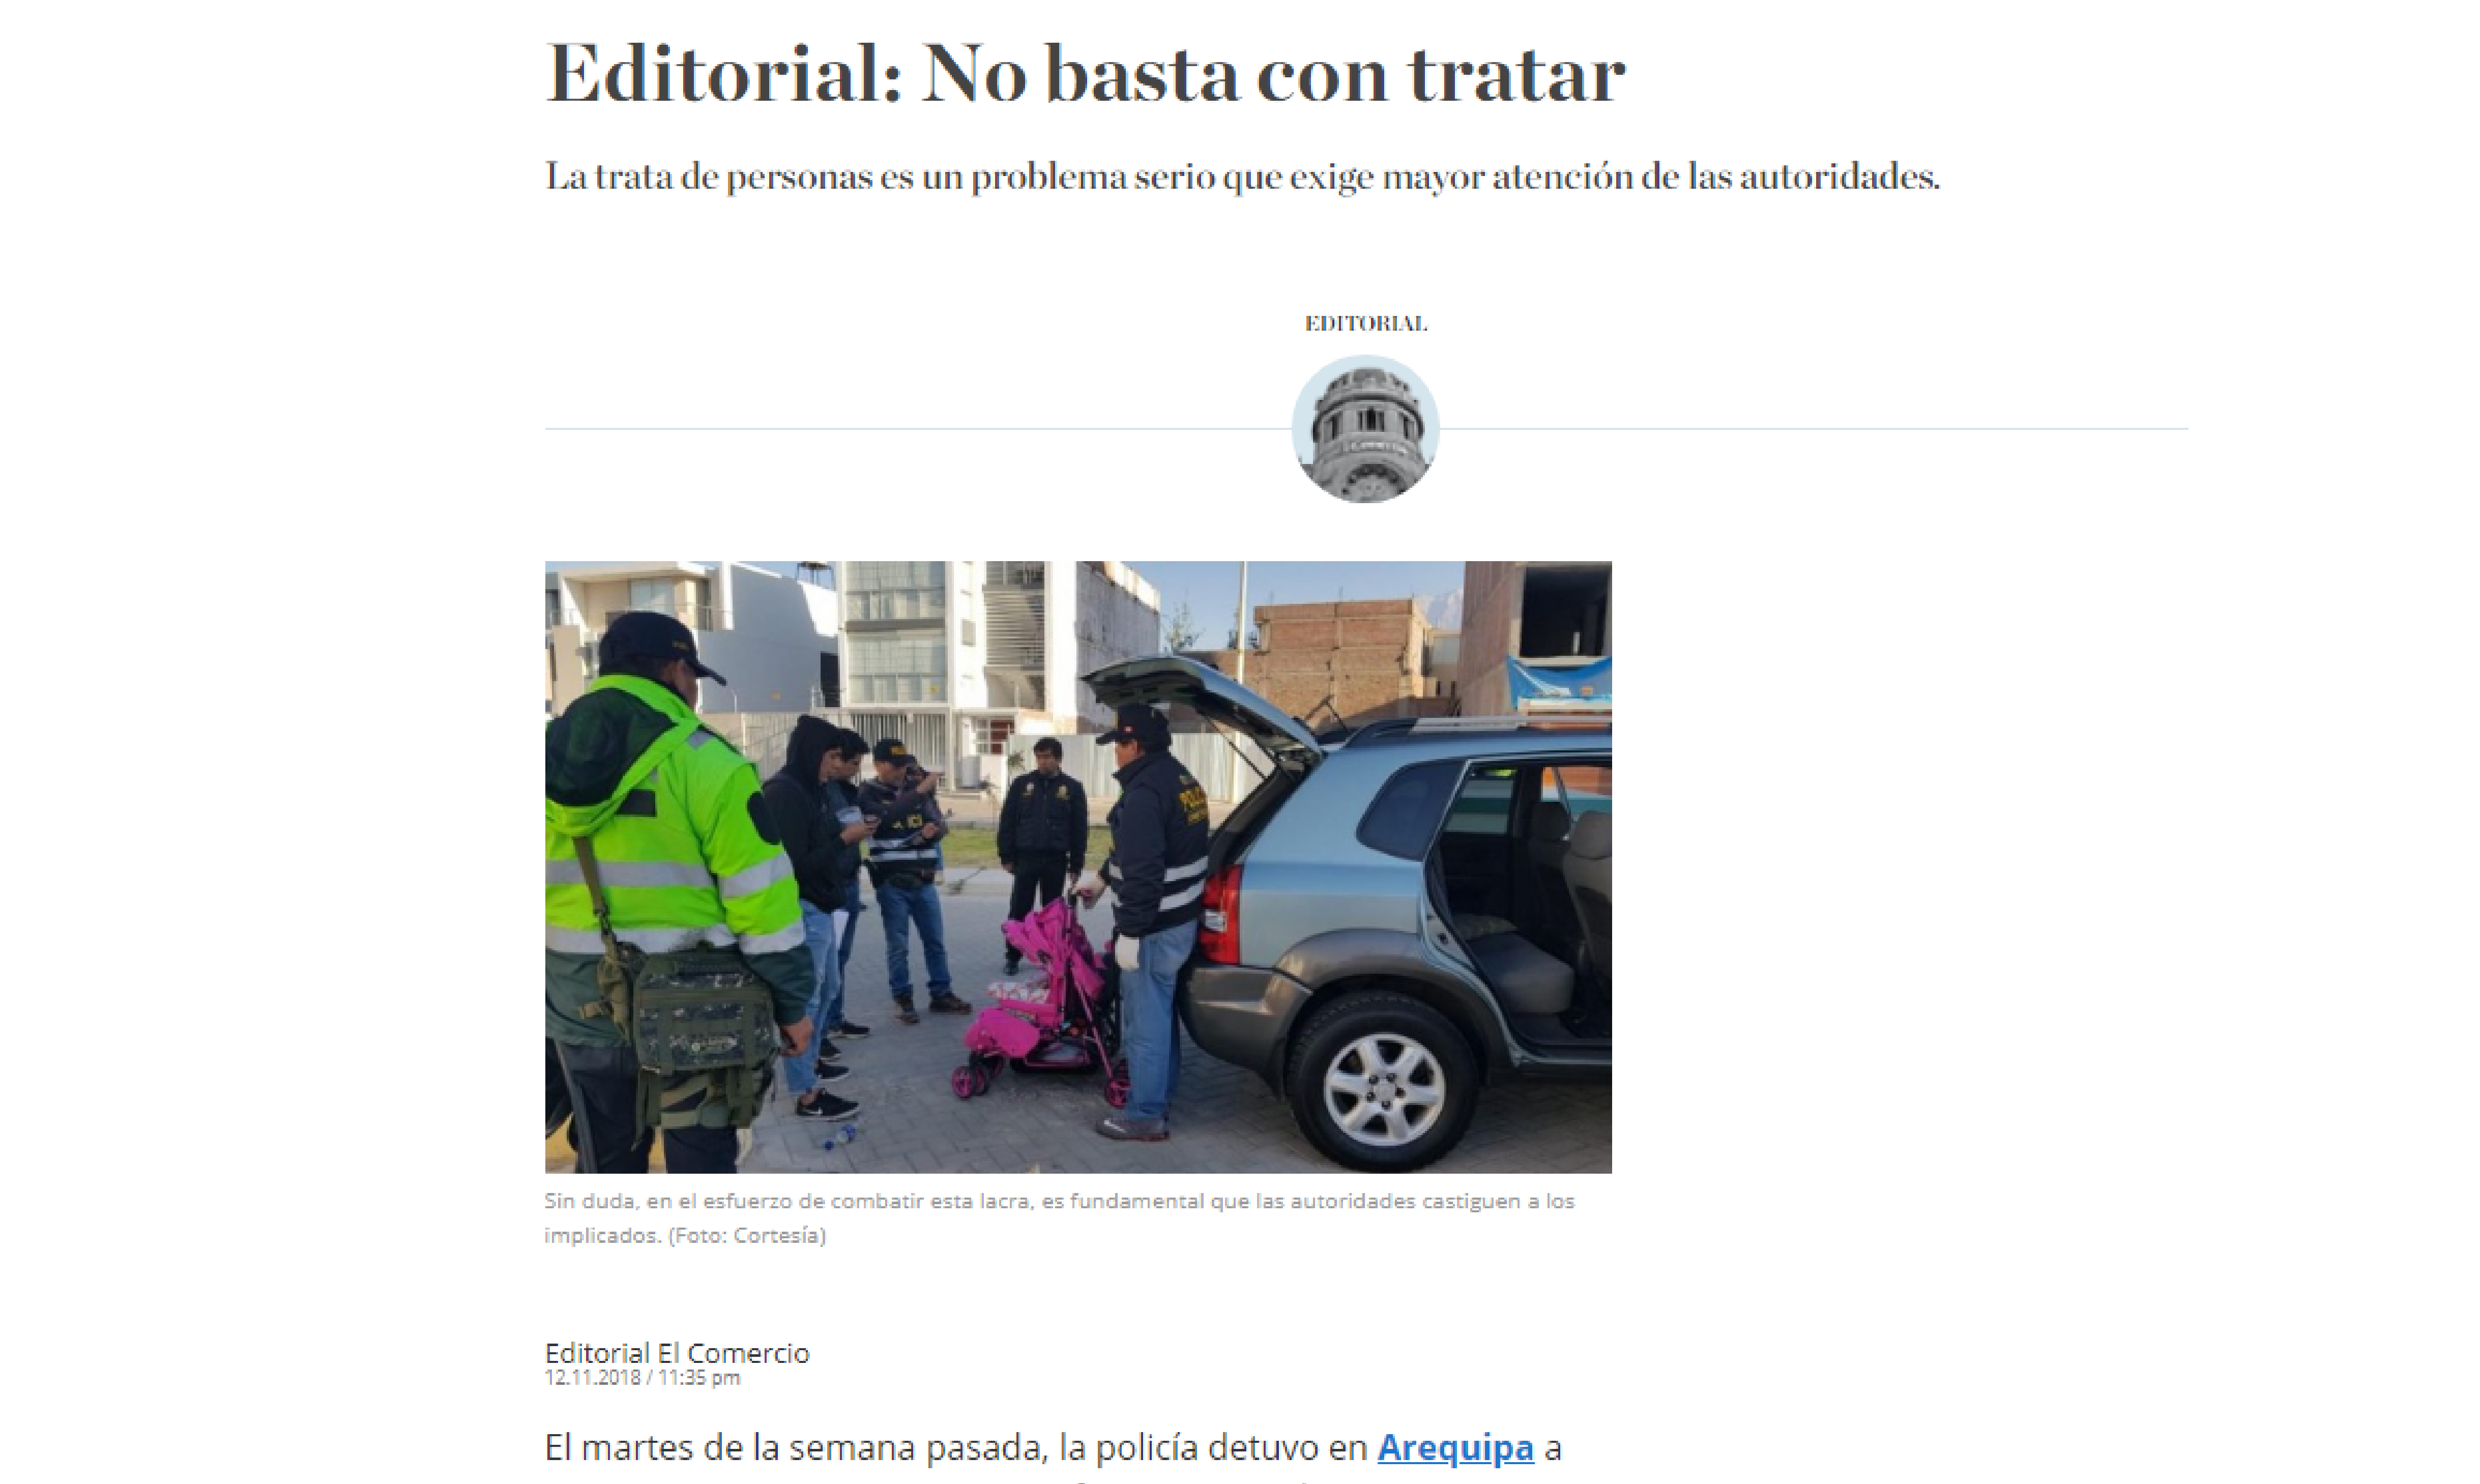 El Comercio: Editorial: No basta con tratar